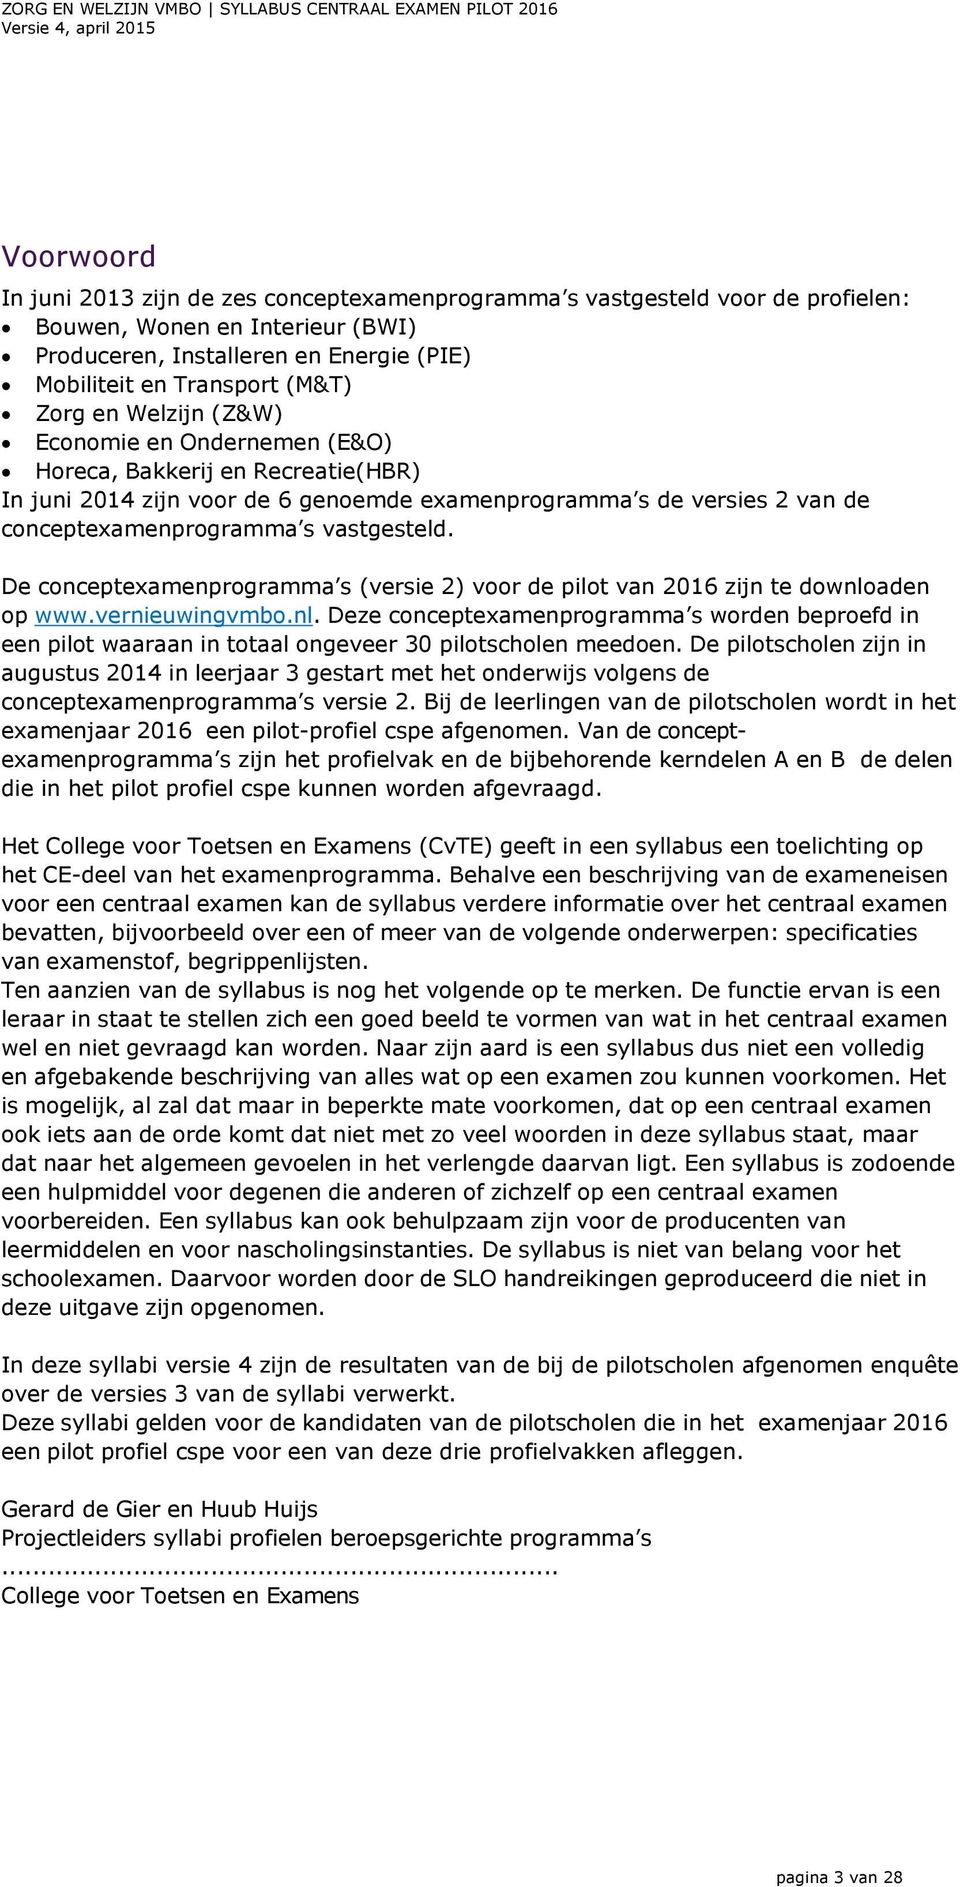 De concepteamenprogramma s (versie 2) voor de pilot van 2016 zijn te downloaden op www.vernieuwingvmbo.nl. Deze concepteamenprogramma s worden beproefd in een pilot waaraan in totaal ongeveer 30 pilotscholen meedoen.